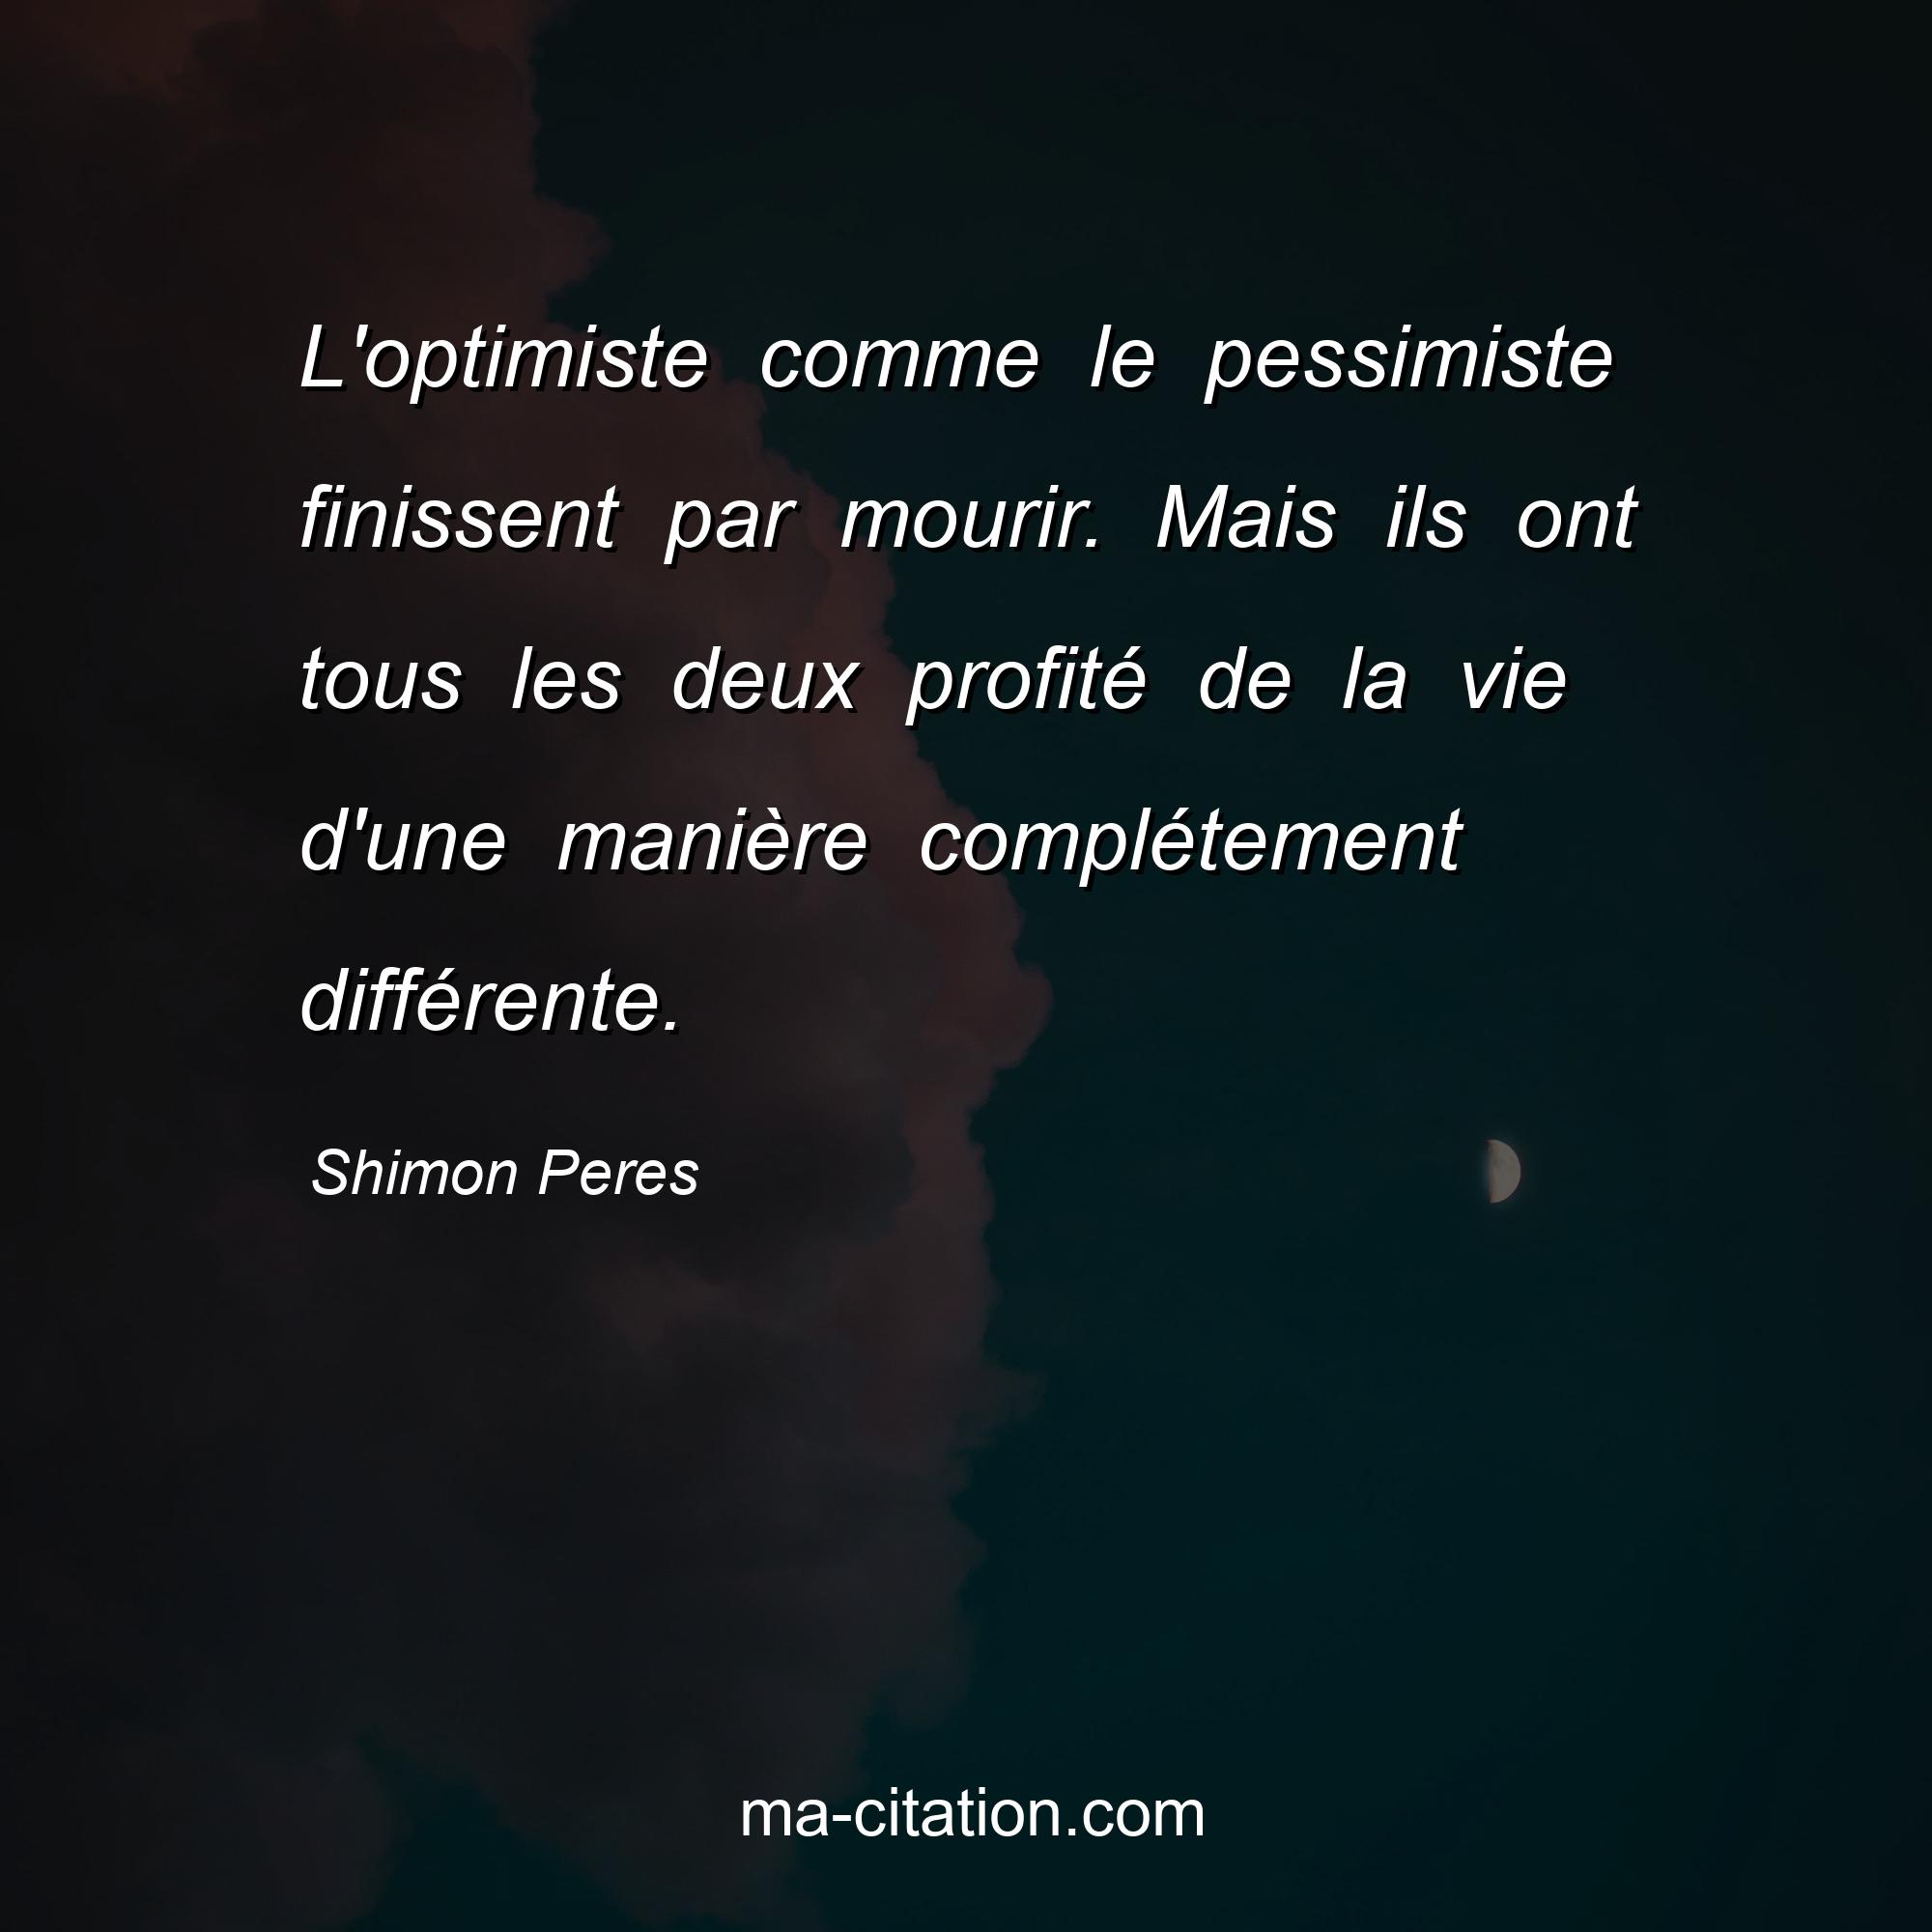 Shimon Peres : L'optimiste comme le pessimiste finissent par mourir. Mais ils ont tous les deux profité de la vie d'une manière complétement différente.